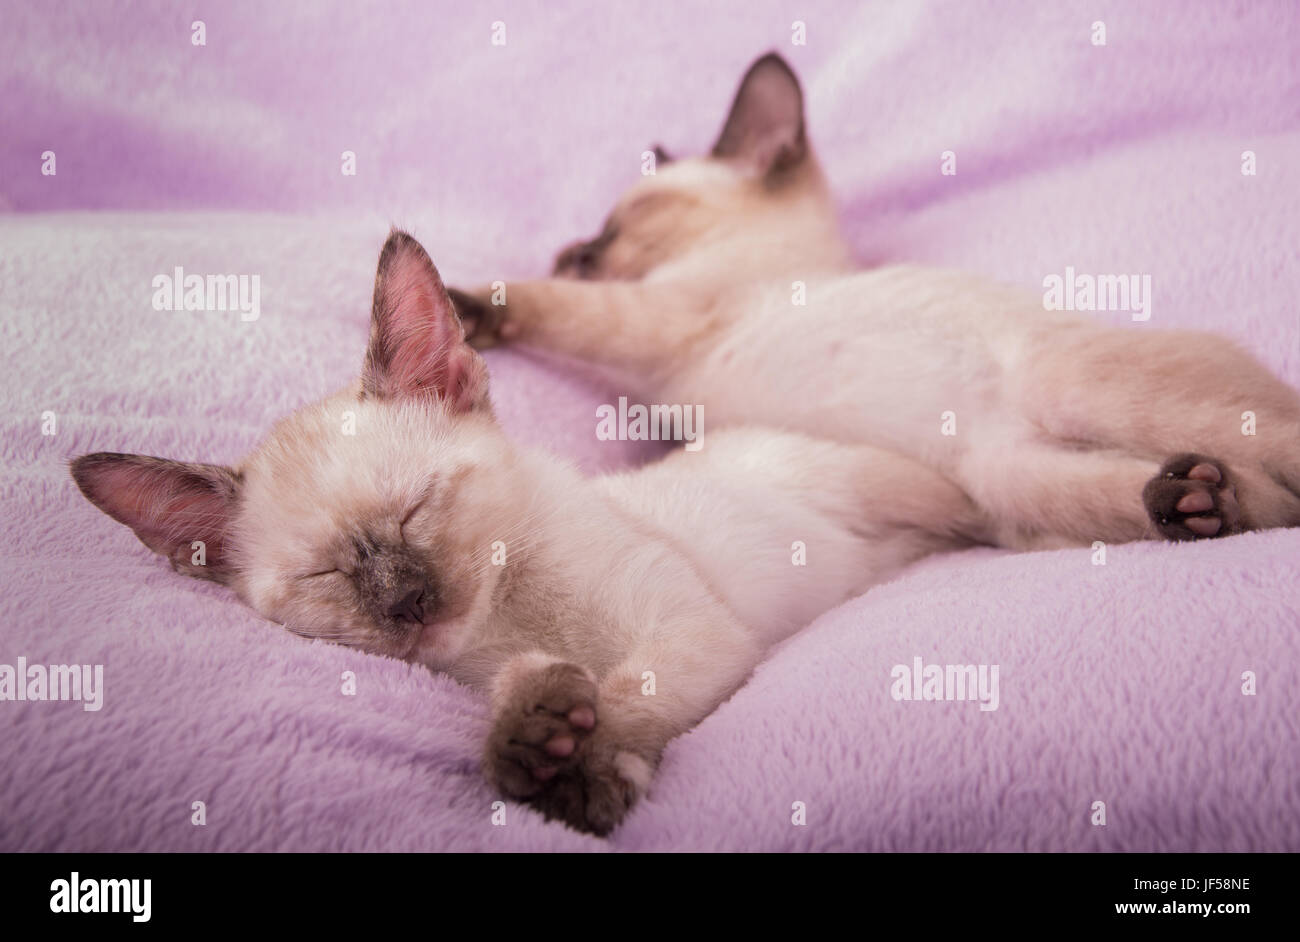 Gattini siamese addormentato su una luce viola cuscino Foto Stock